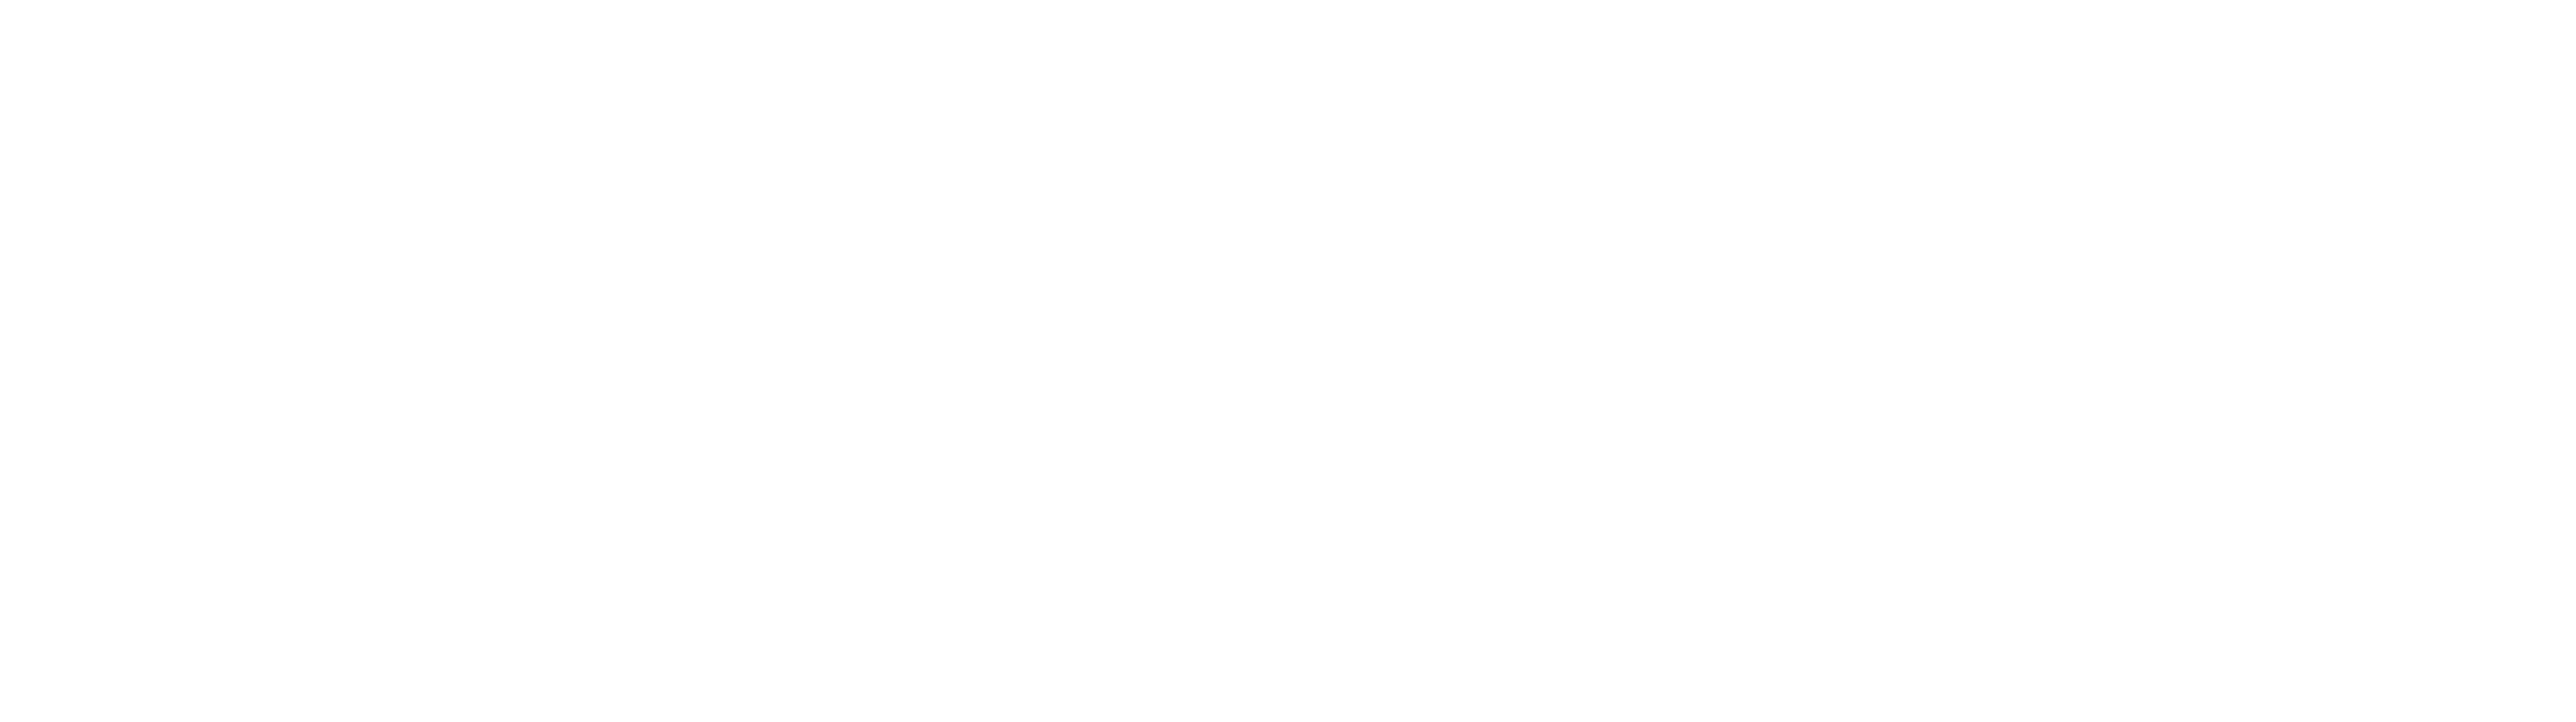 Motorfleet logo